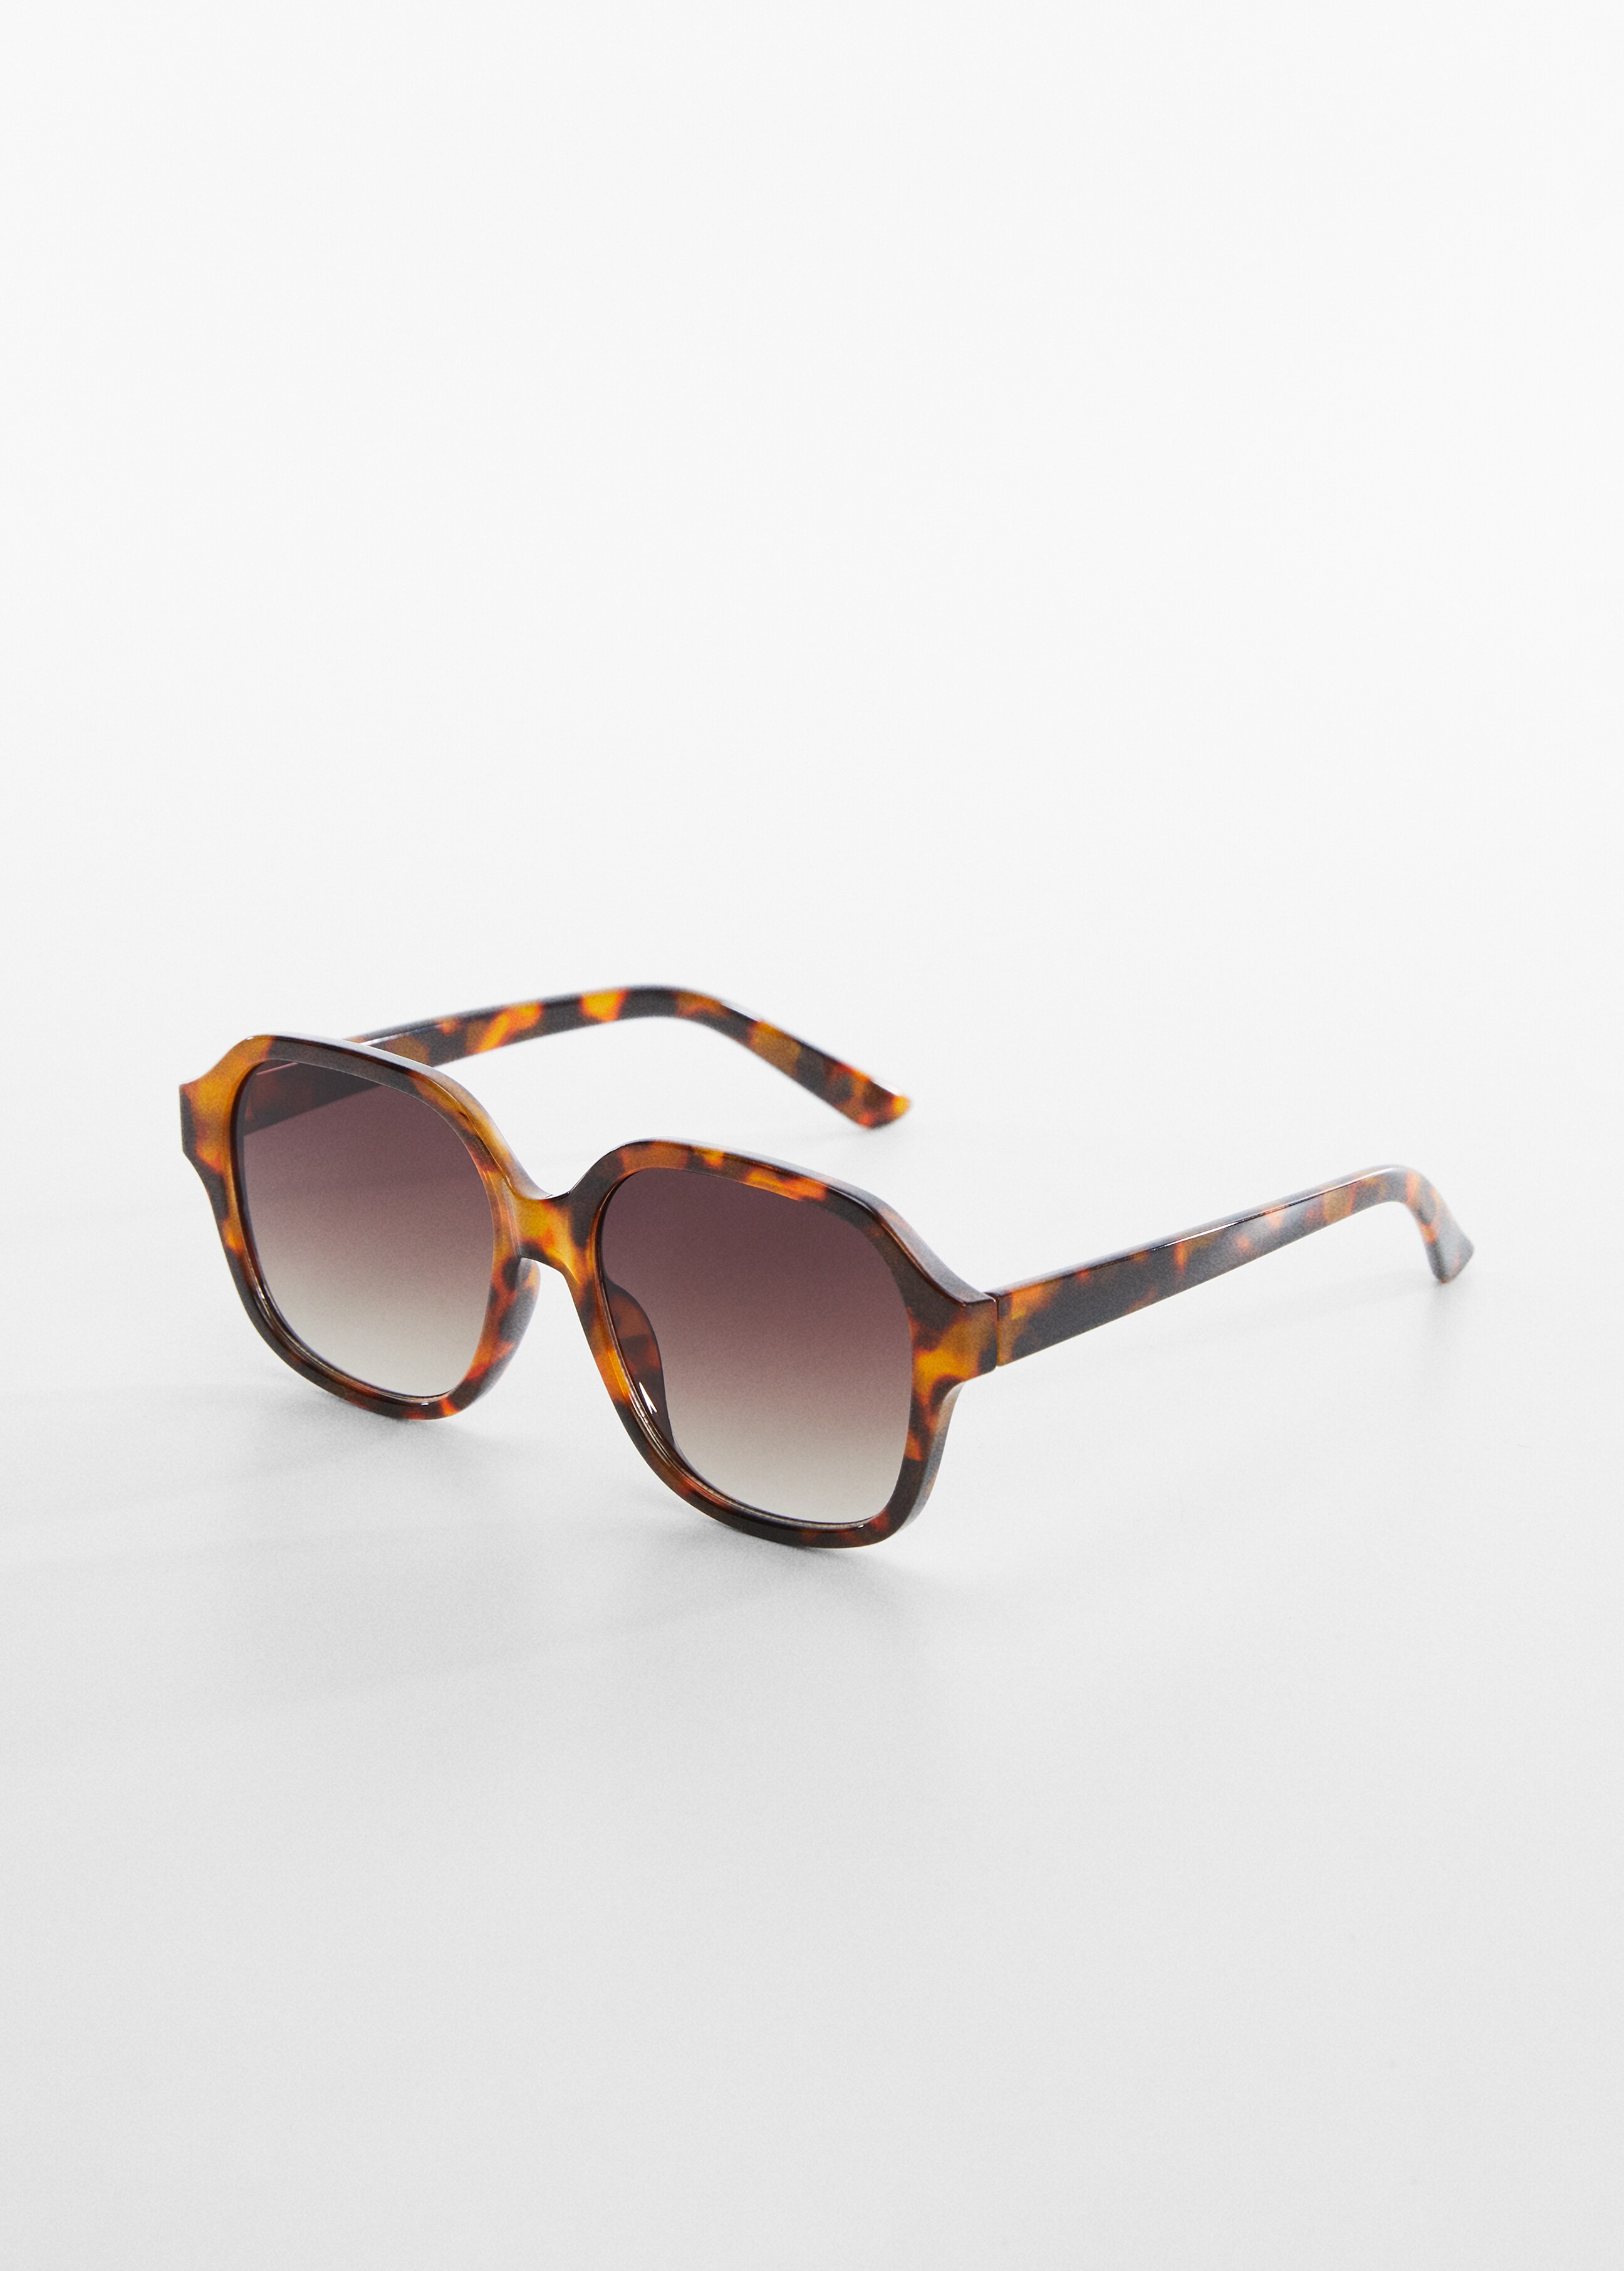 Retro style sunglasses - Medium plane